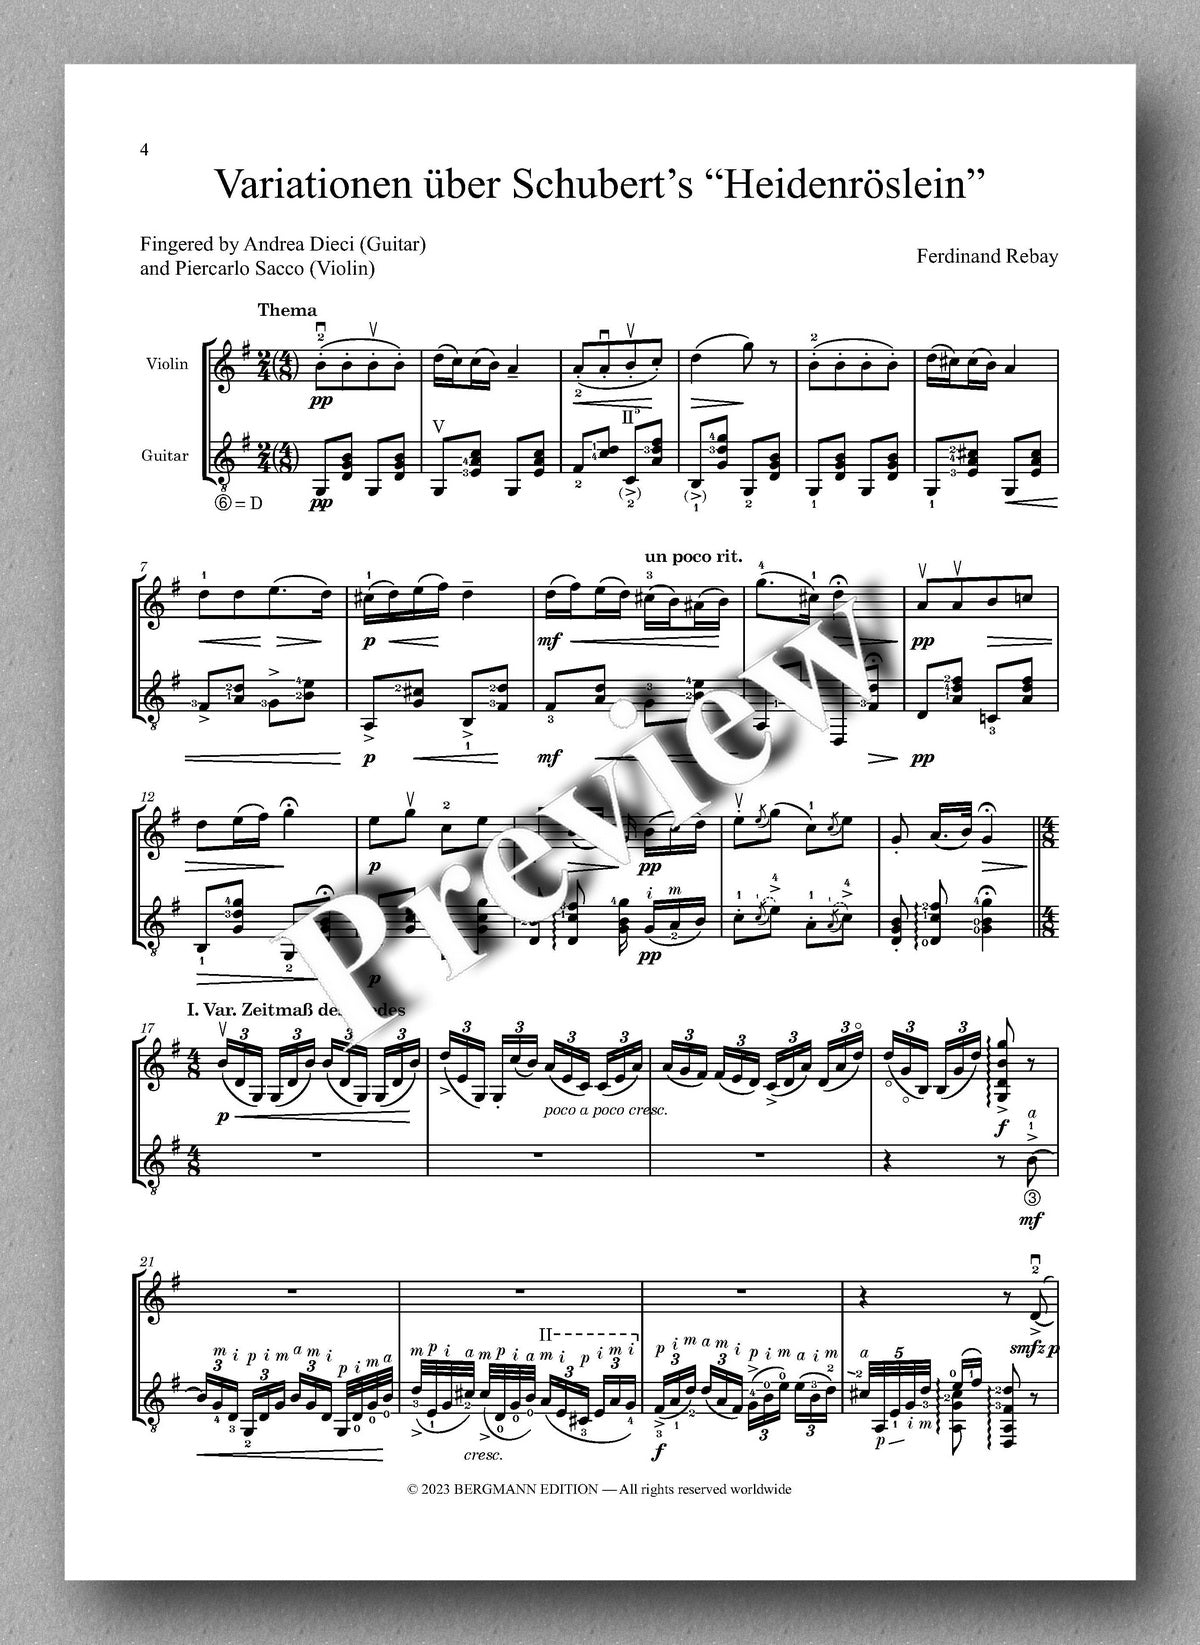 Ferdinand Rebay, Variationen über Schubert’s “Heidenröslein” - preview of the music score 1